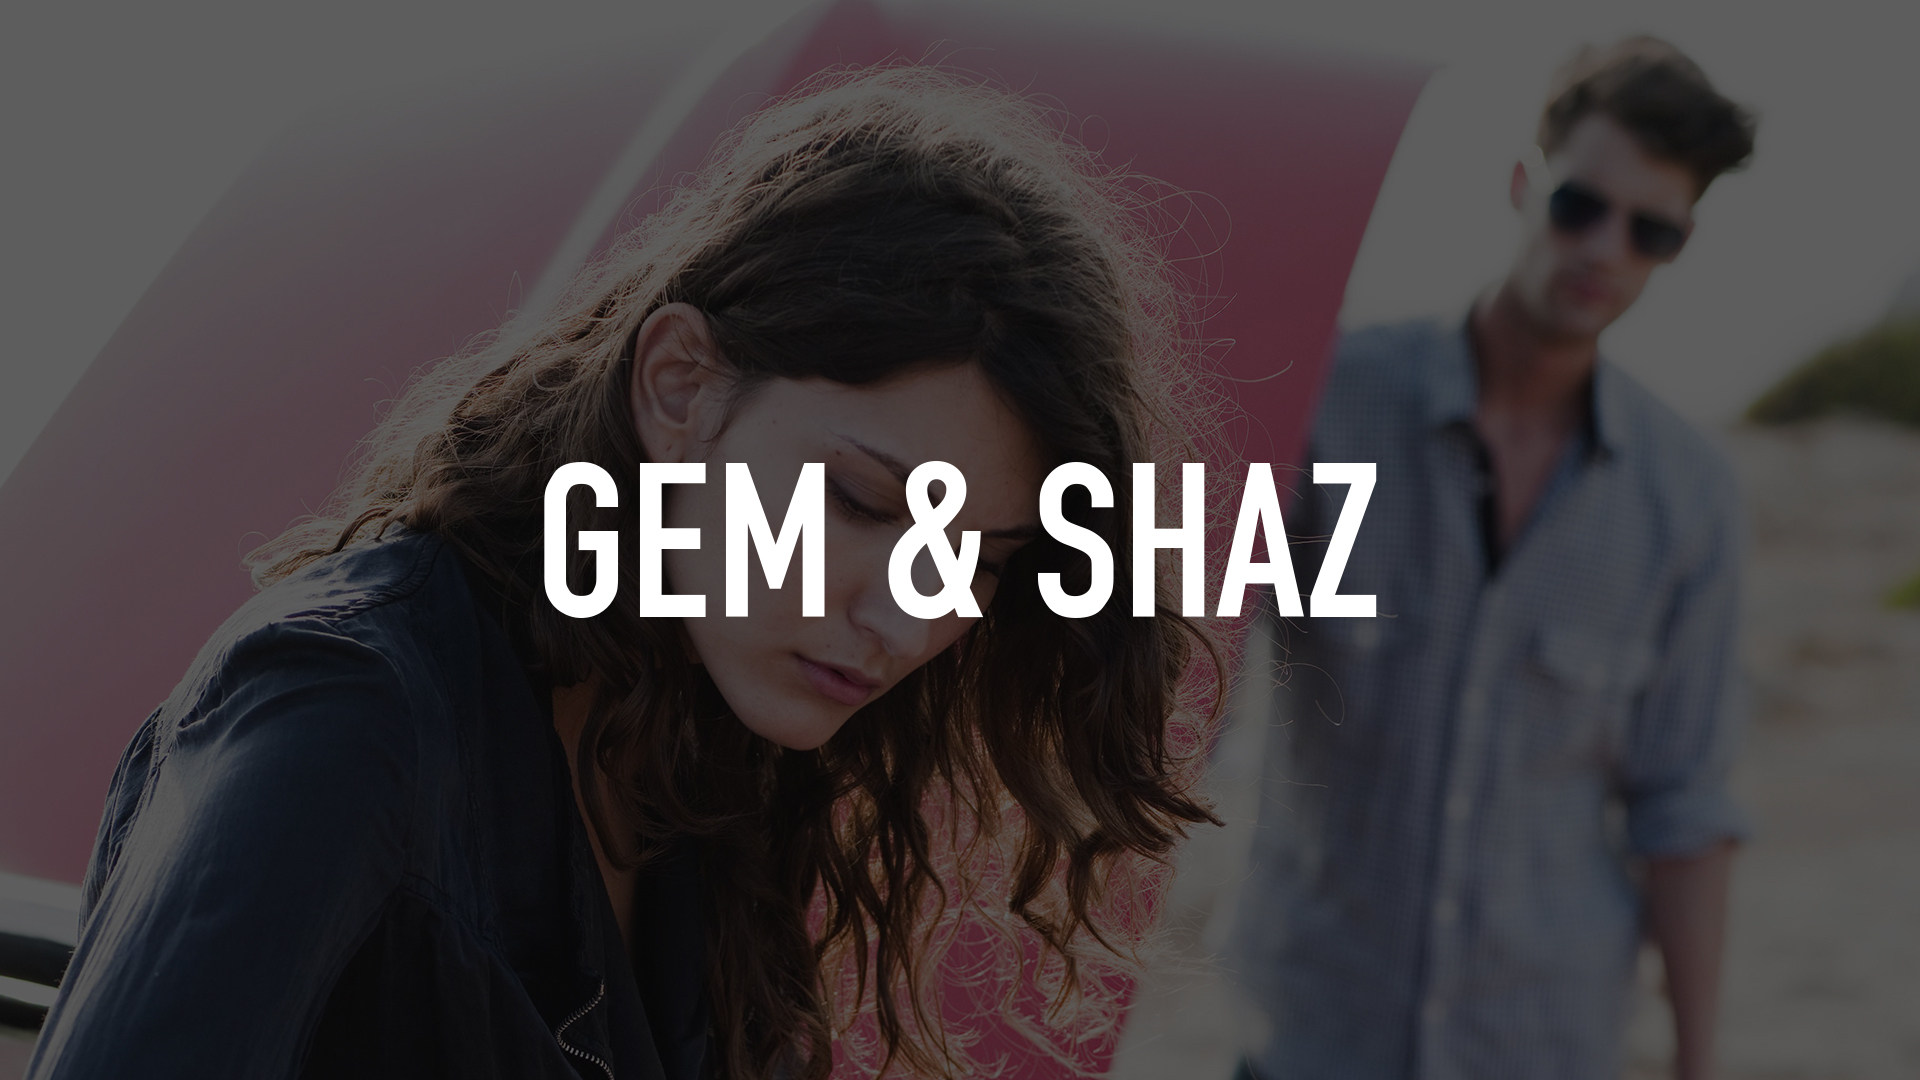 Gem & Shaz